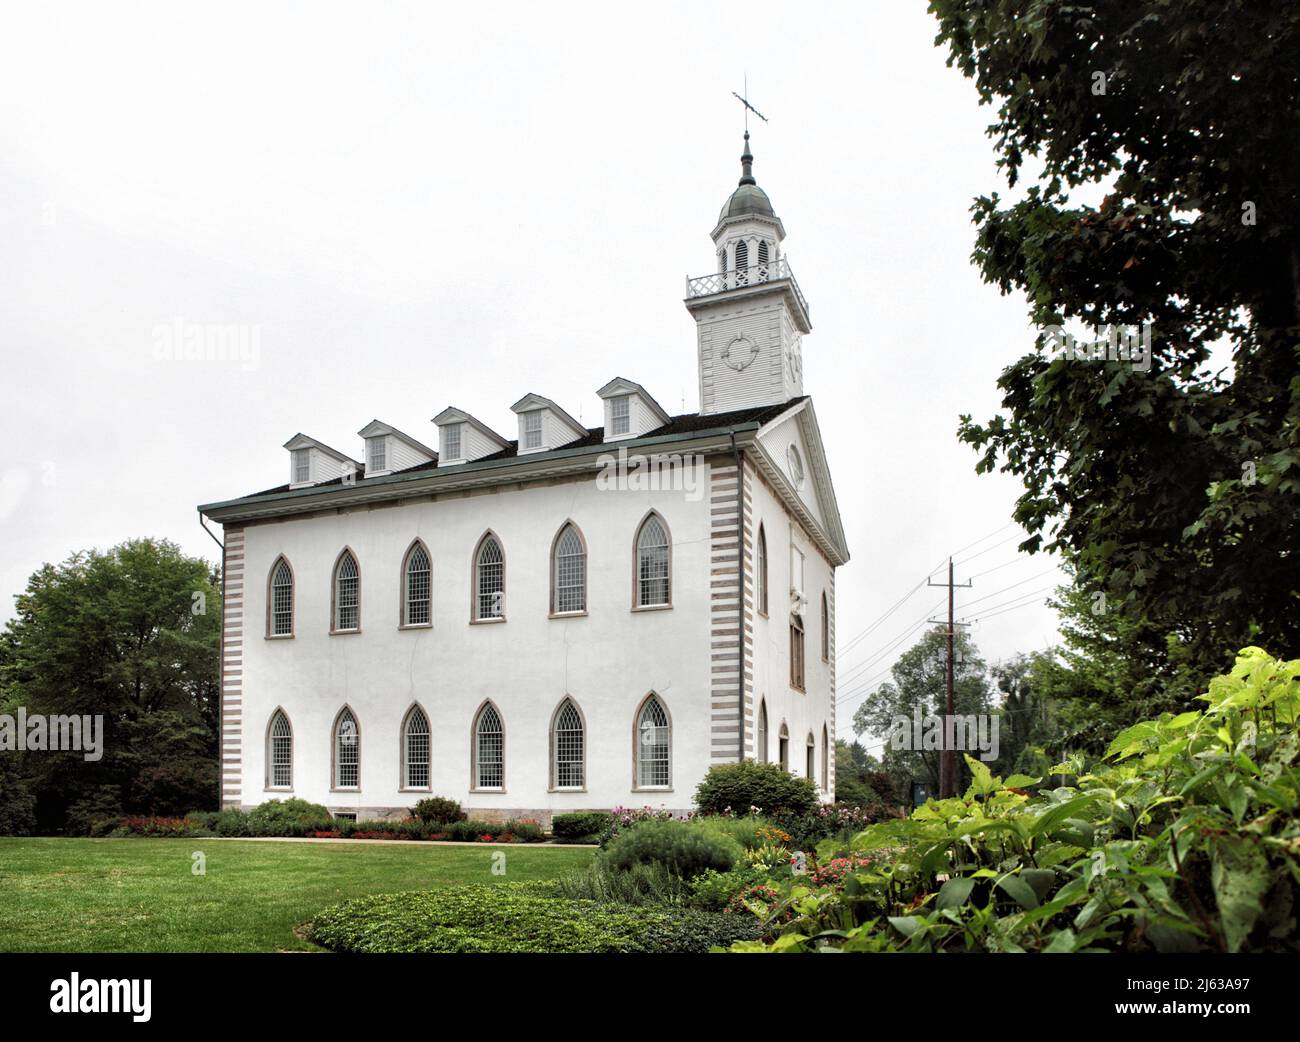 Der Kirtland Ohio Tempel wurde 1834 von der Church of Jesus Christ iof Latter Day Saints erbaut. Es ist in einem gotischen Revivals-Stil, typisch für die Kirche gebaut Stockfoto